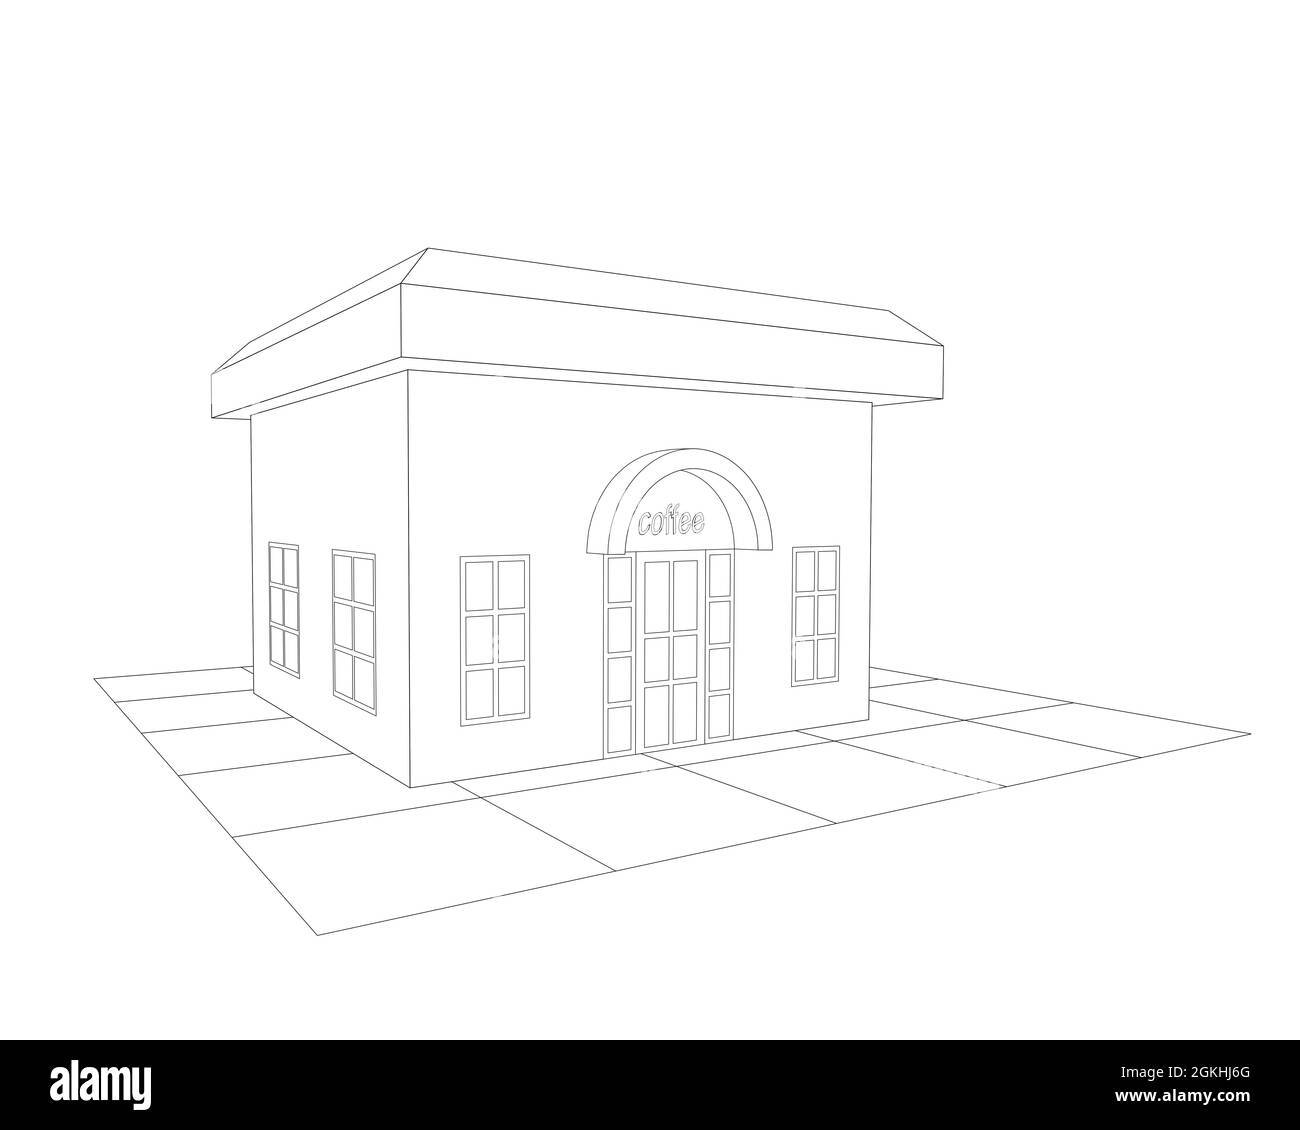 vista in 3d di un negozio di caffè o di un edificio esterno di un negozio di caffè, illustrazione in bianco e nero di un piccolo ristorante, vista prospettica Foto Stock